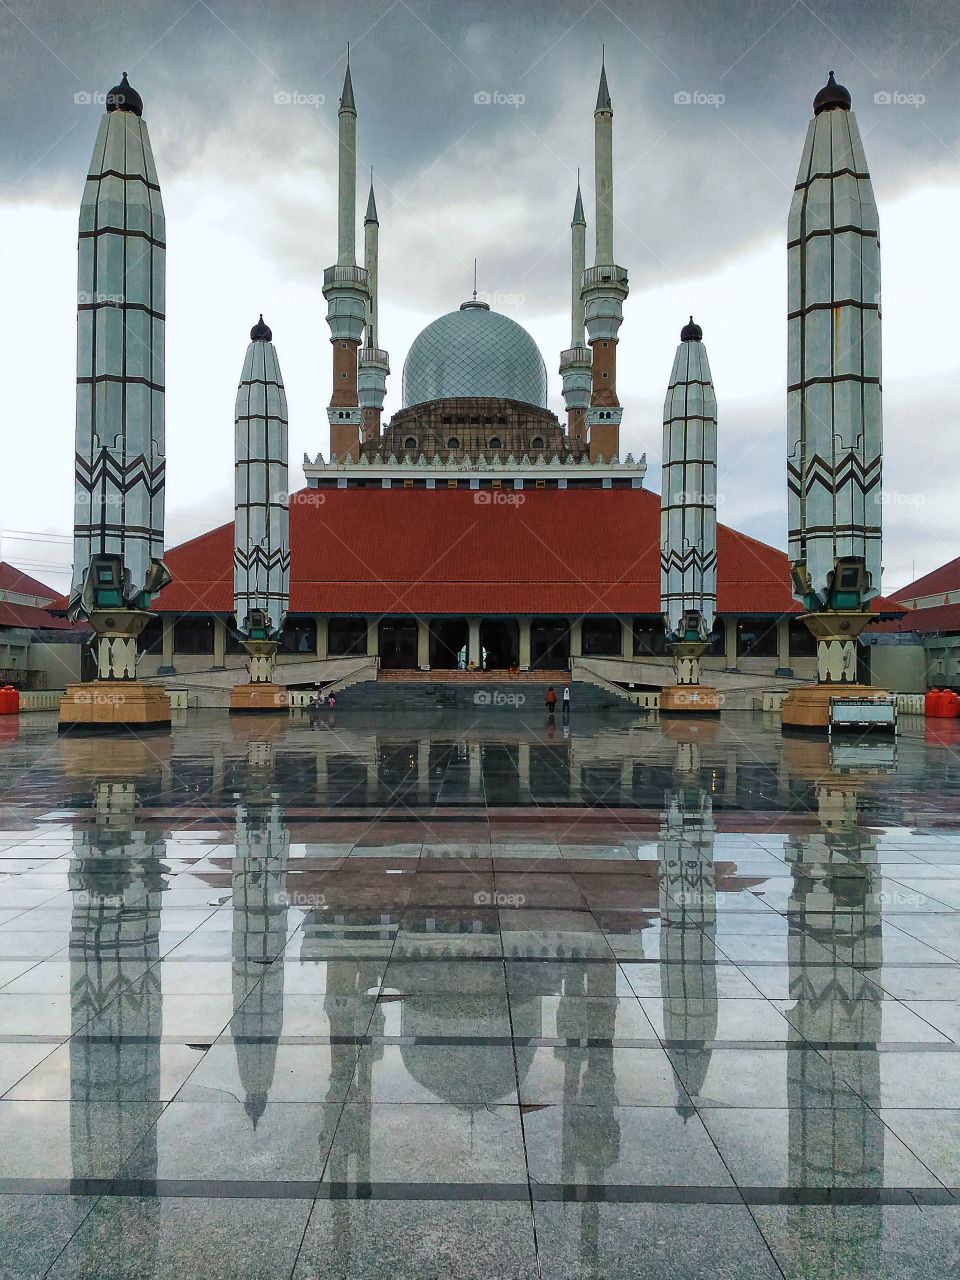 Masjid Agung Jawa Tengah (the Central Java Great Mosque).